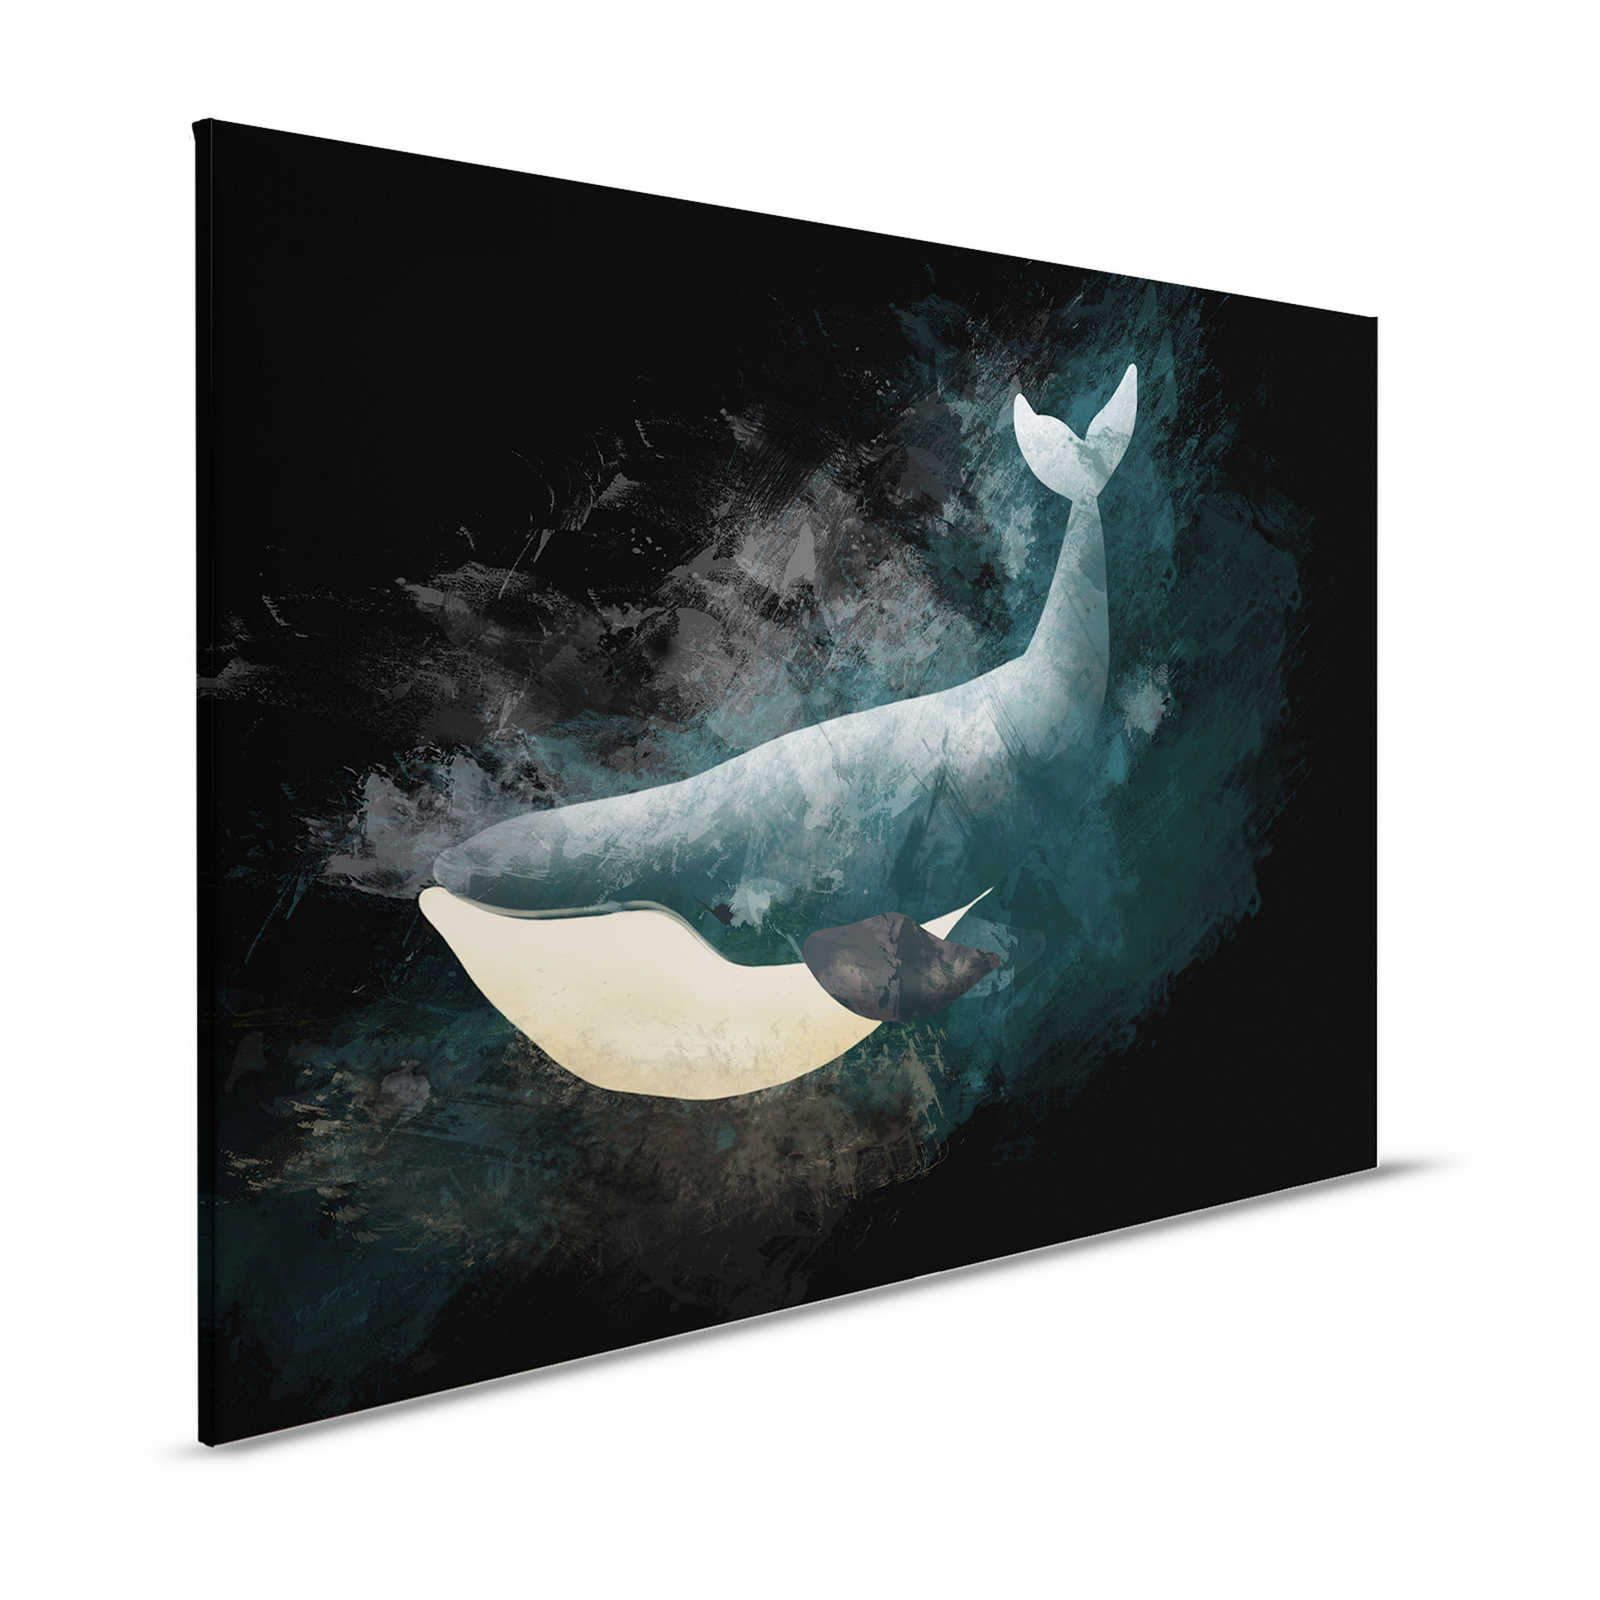 Toile noire avec baleine dessinée - 1,20 m x 0,80 m
